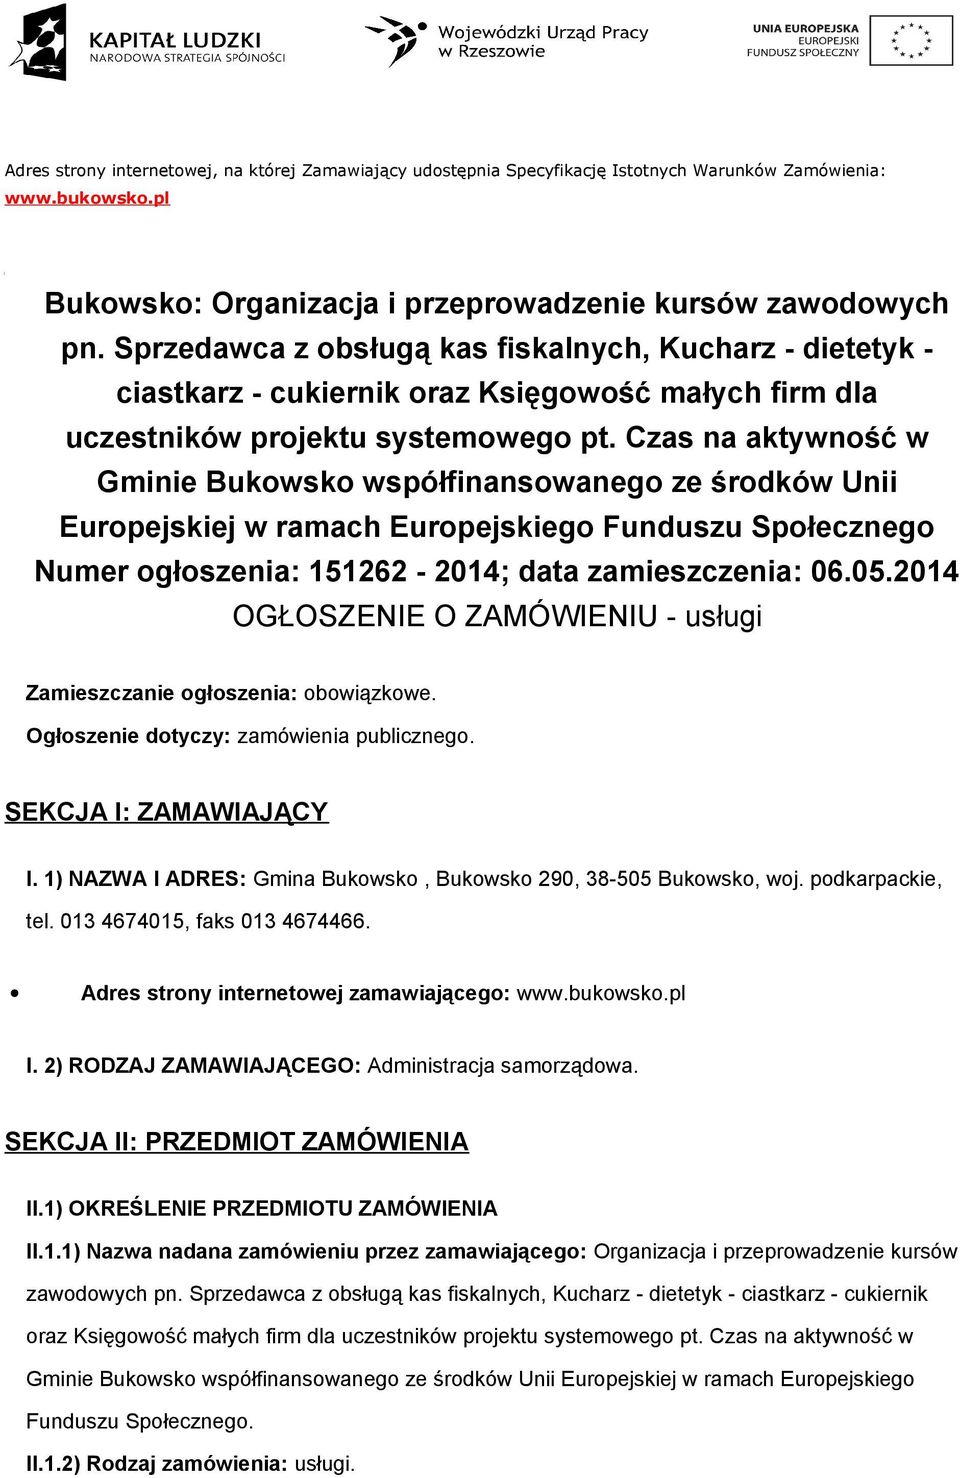 Czas na aktywność w Gminie Bukowsko współfinansowanego ze środków Unii Europejskiej w ramach Europejskiego Funduszu Społecznego Numer ogłoszenia: 151262-2014; data zamieszczenia: 06.05.